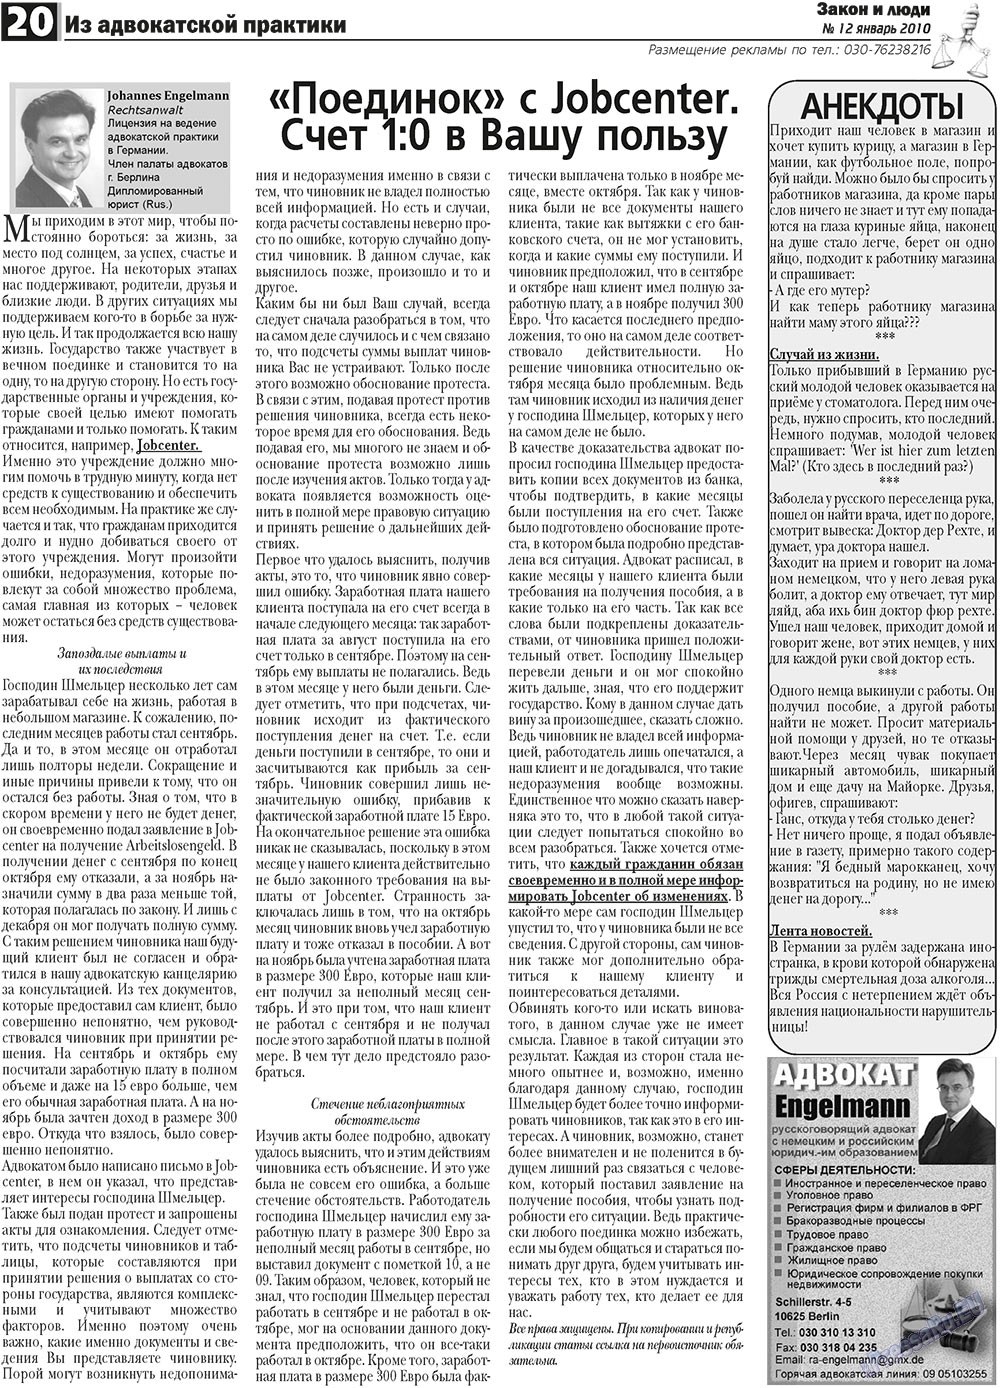 Закон и люди (газета). 2011 год, номер 1, стр. 20